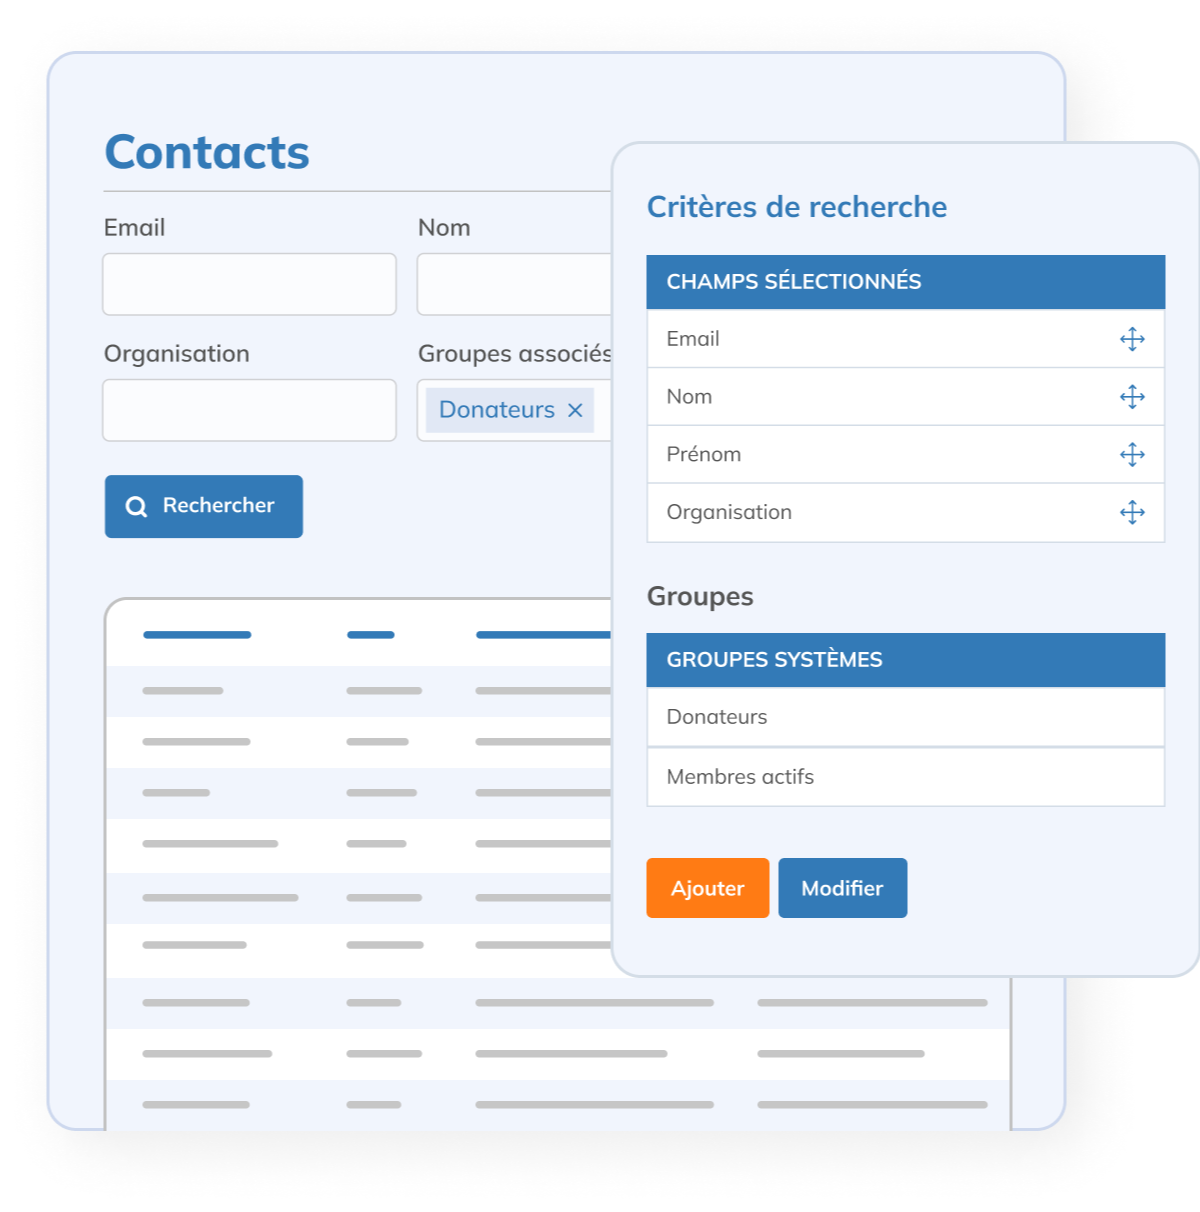 03 - fr - Contacts - Personnalisez la structure de votre base de contacts selon vos besoins